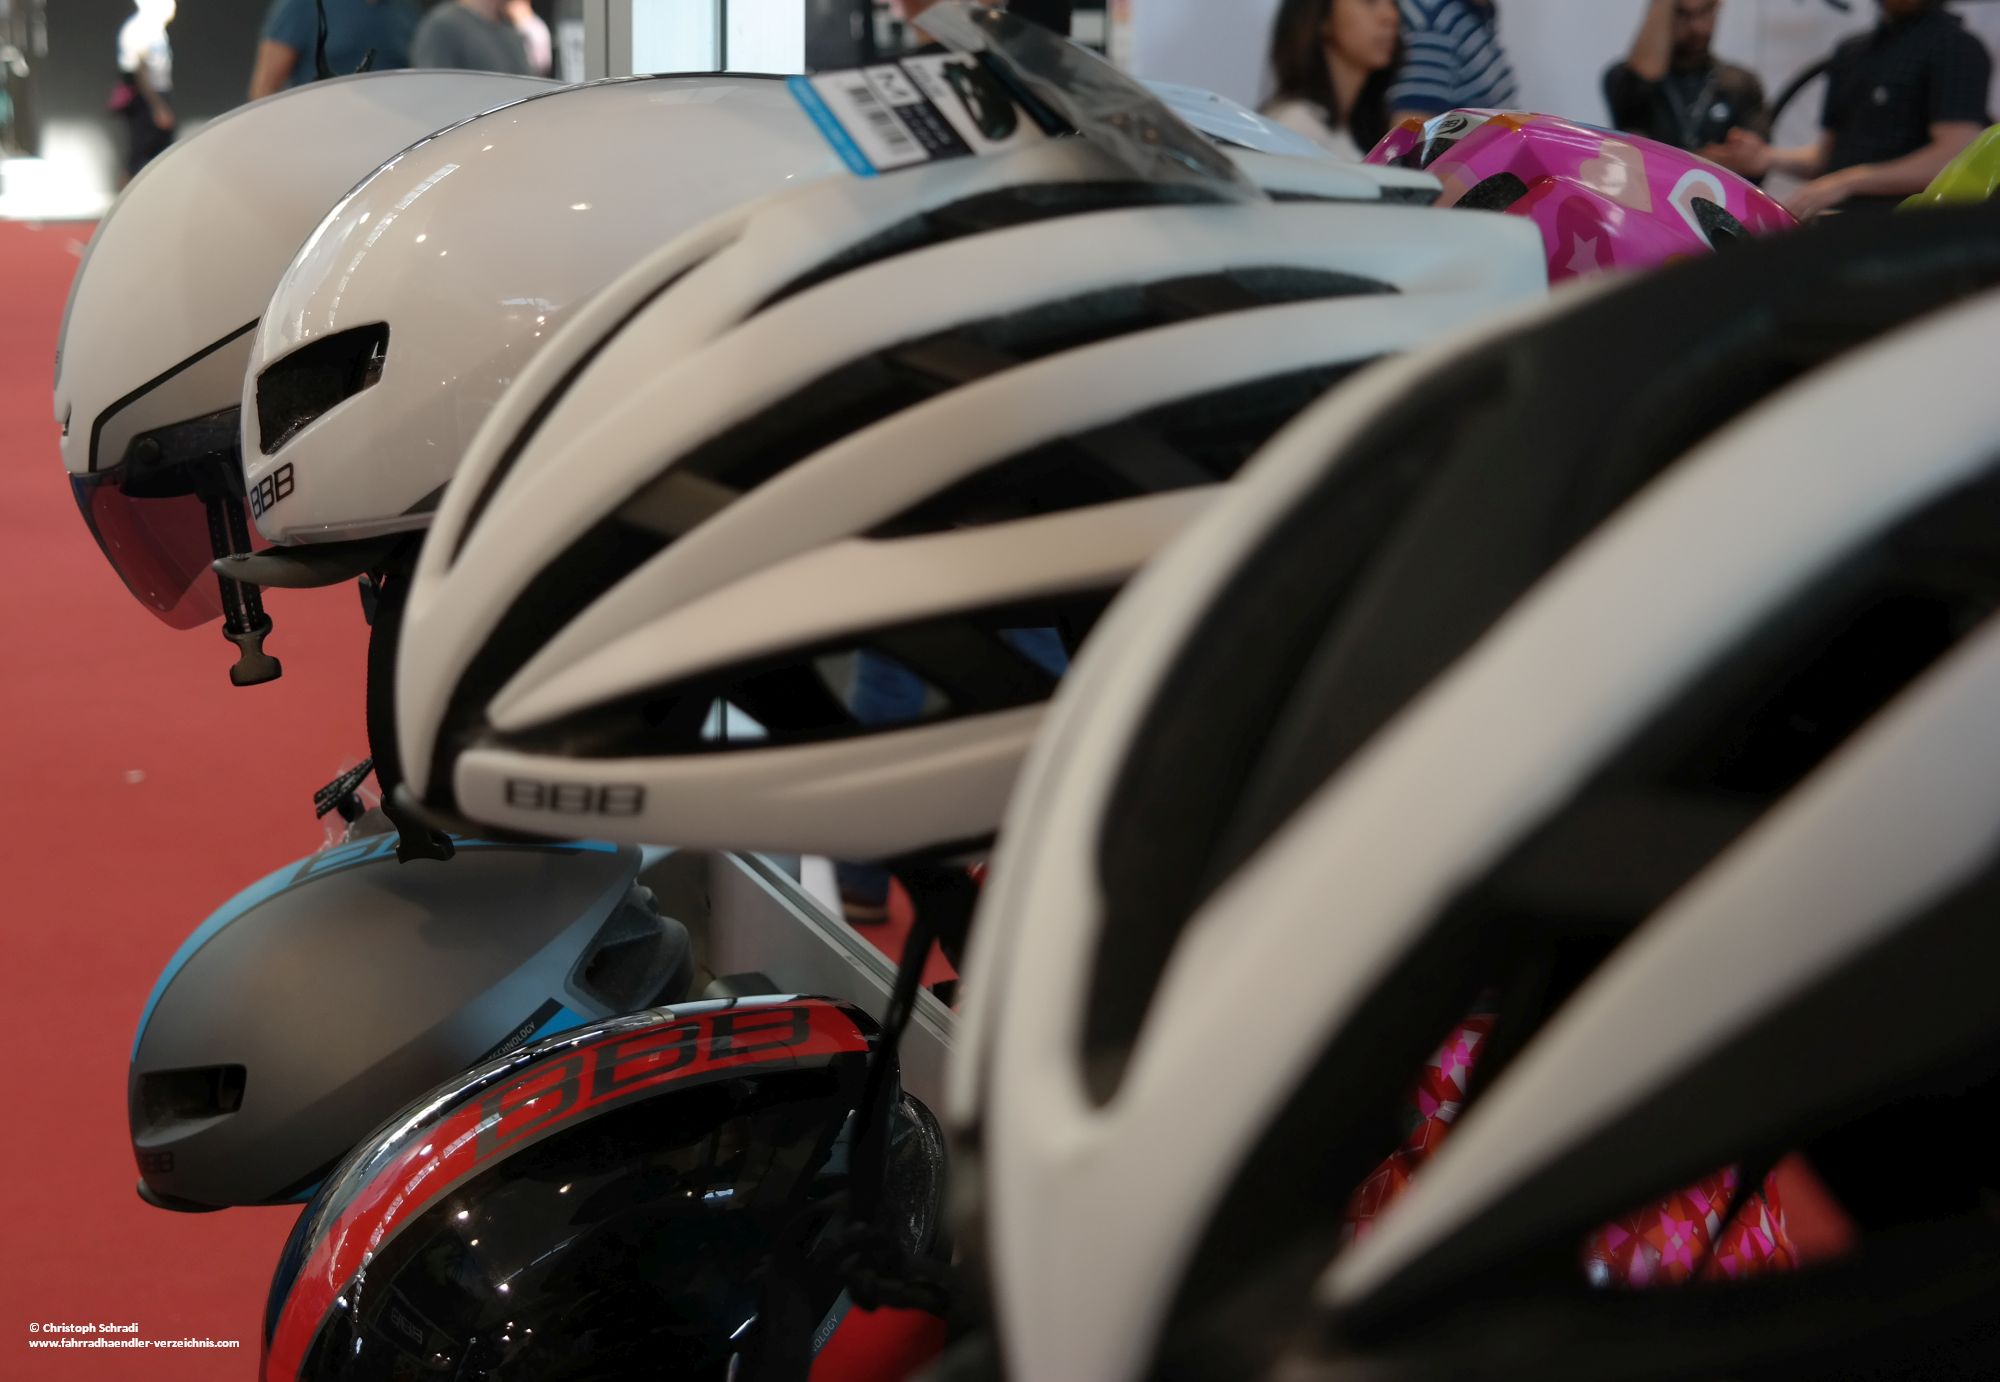 Helme fürs Rennradfahren sind besonders aerodynamisch und sehr leicht